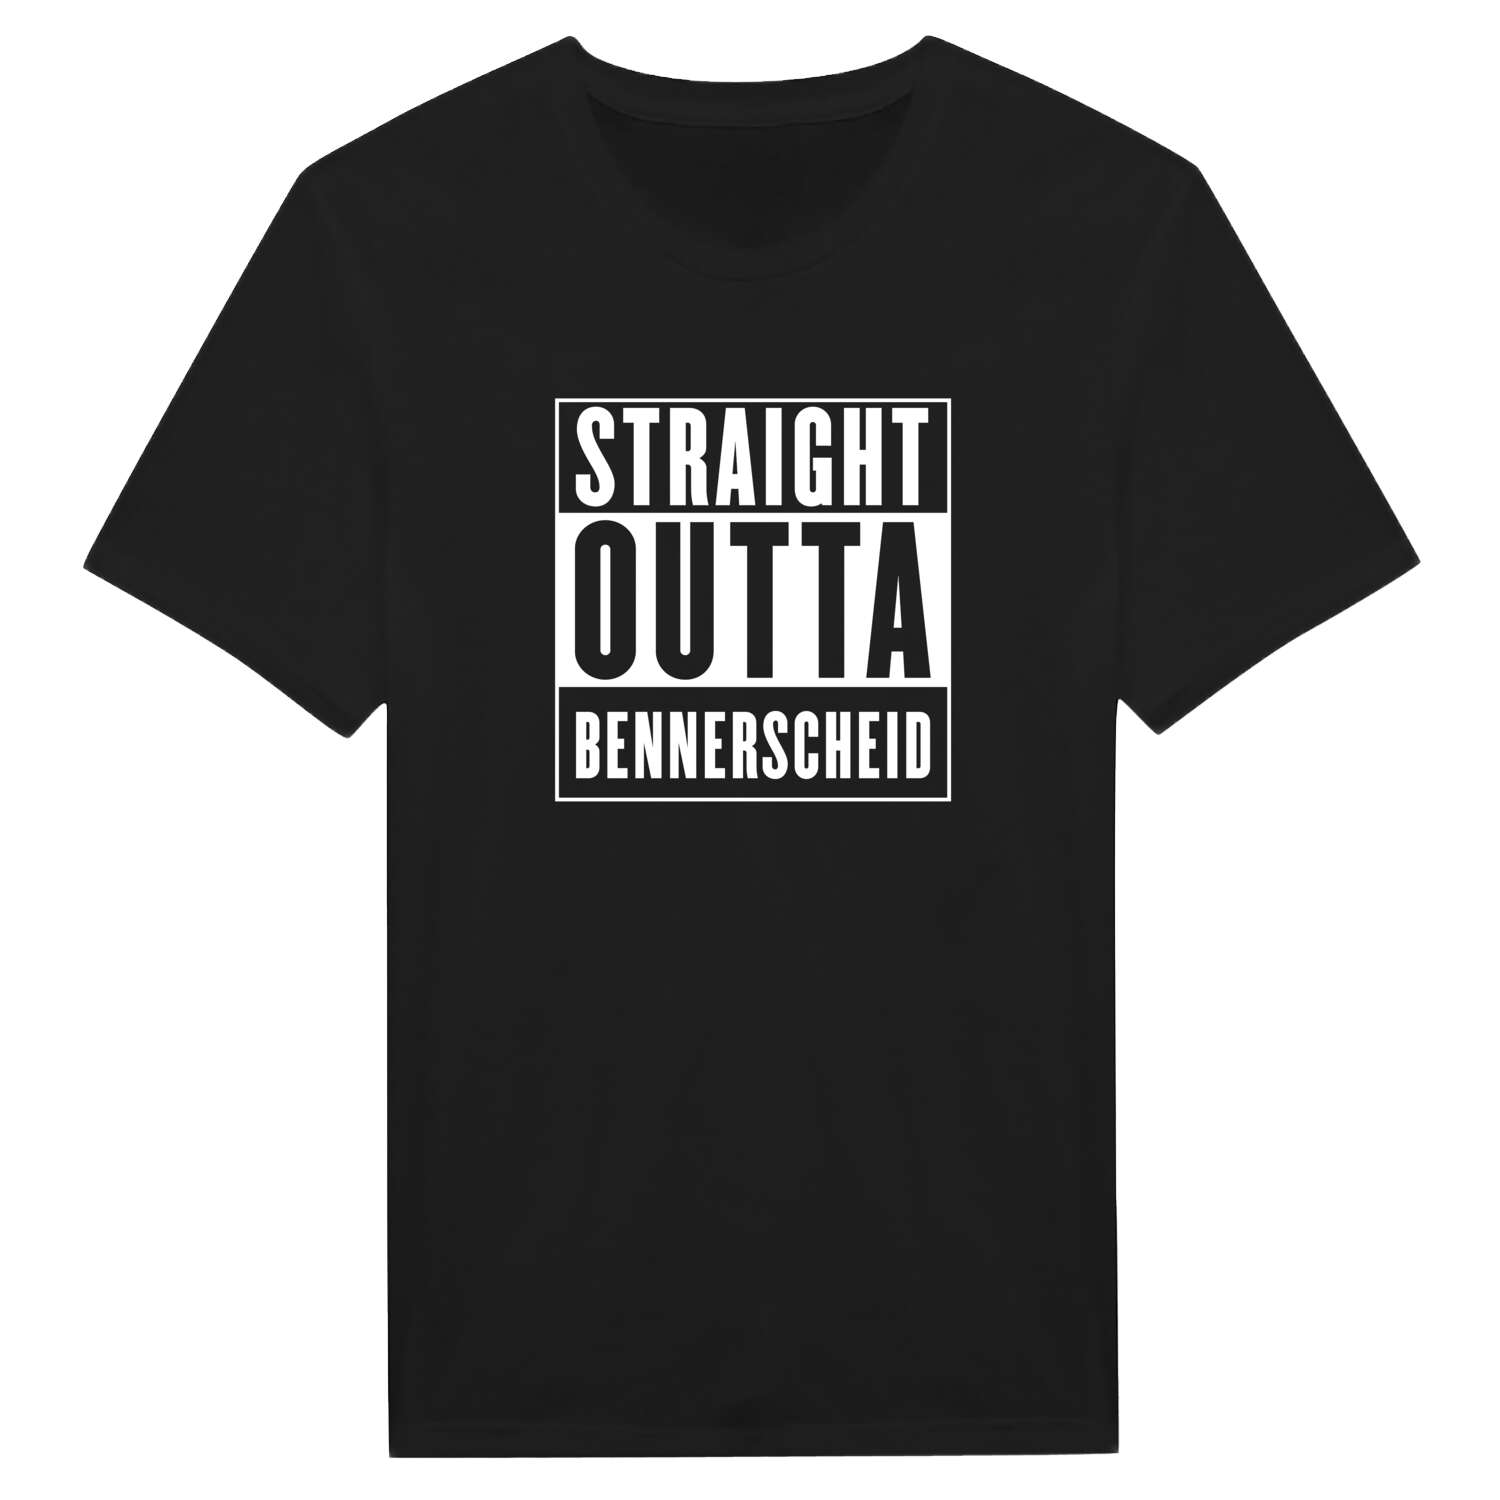 Bennerscheid T-Shirt »Straight Outta«